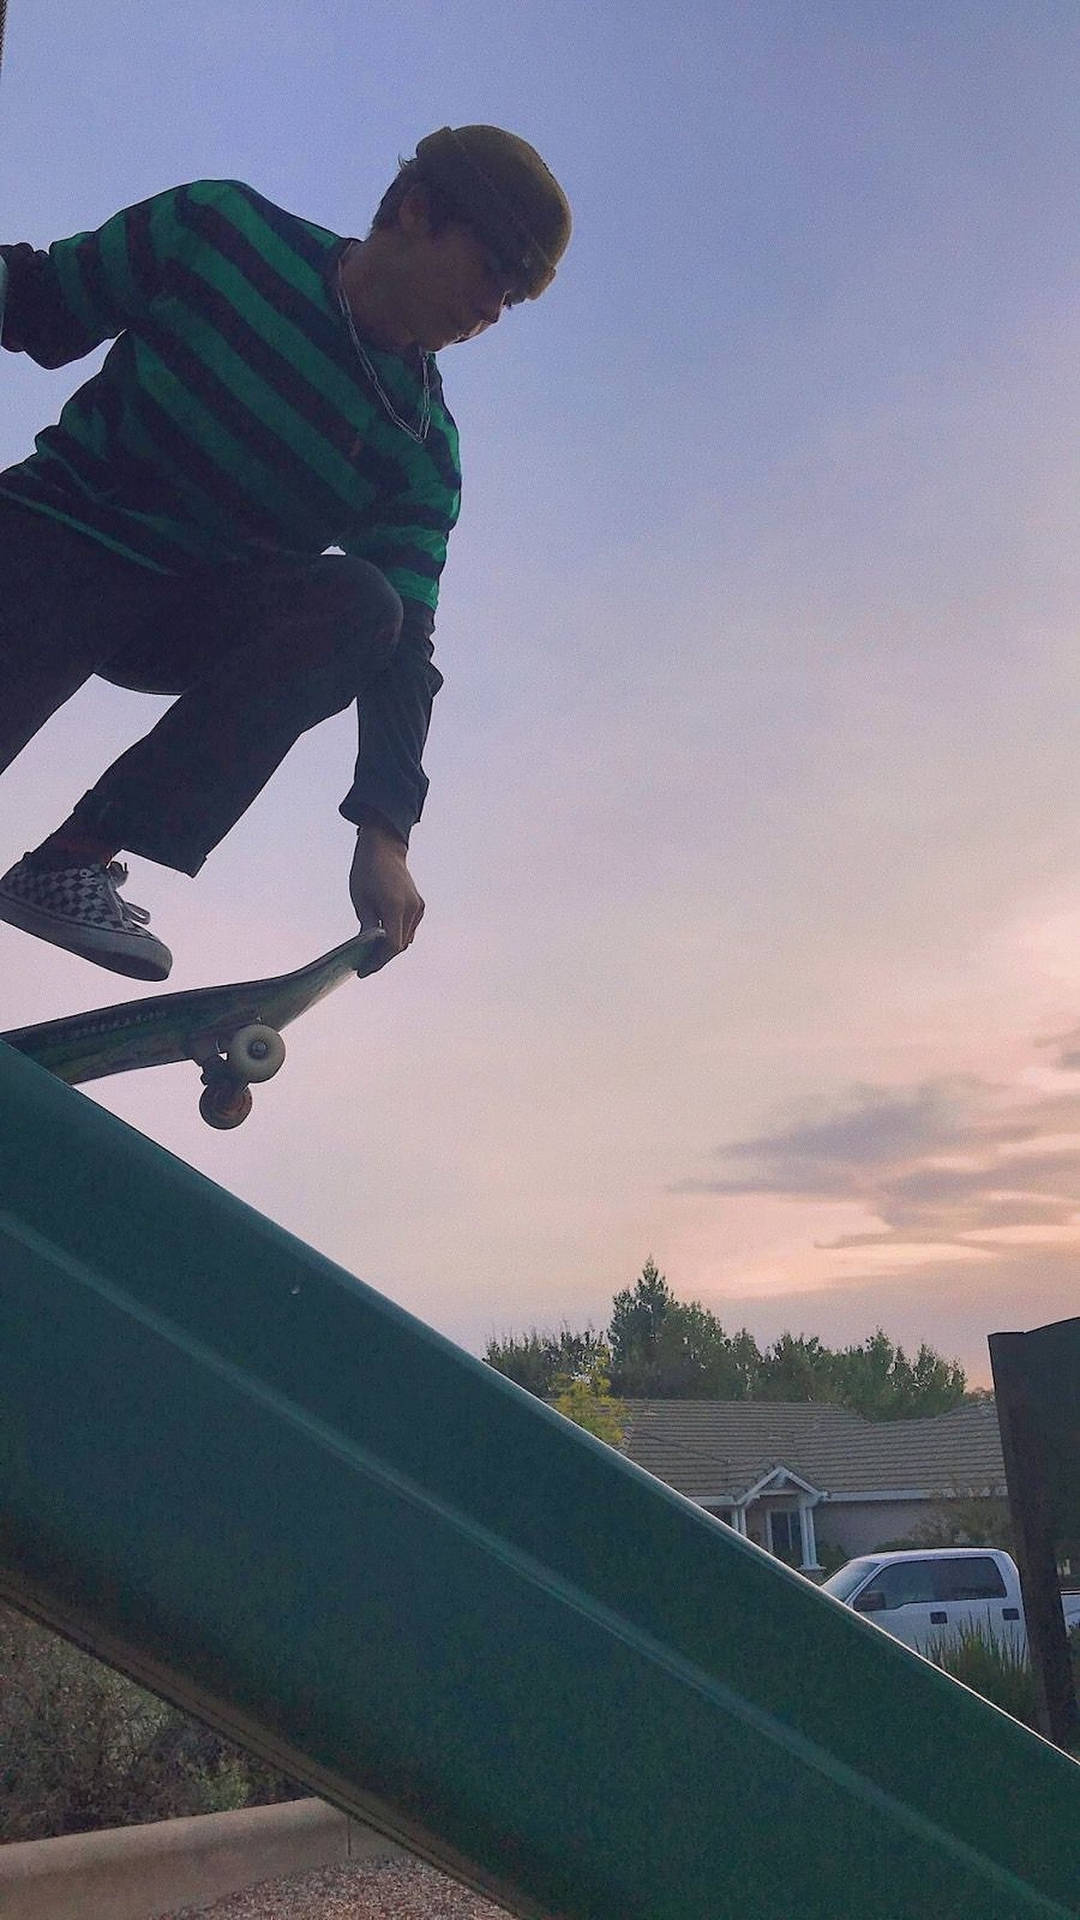 Aesthetic Skater Boy On Slide